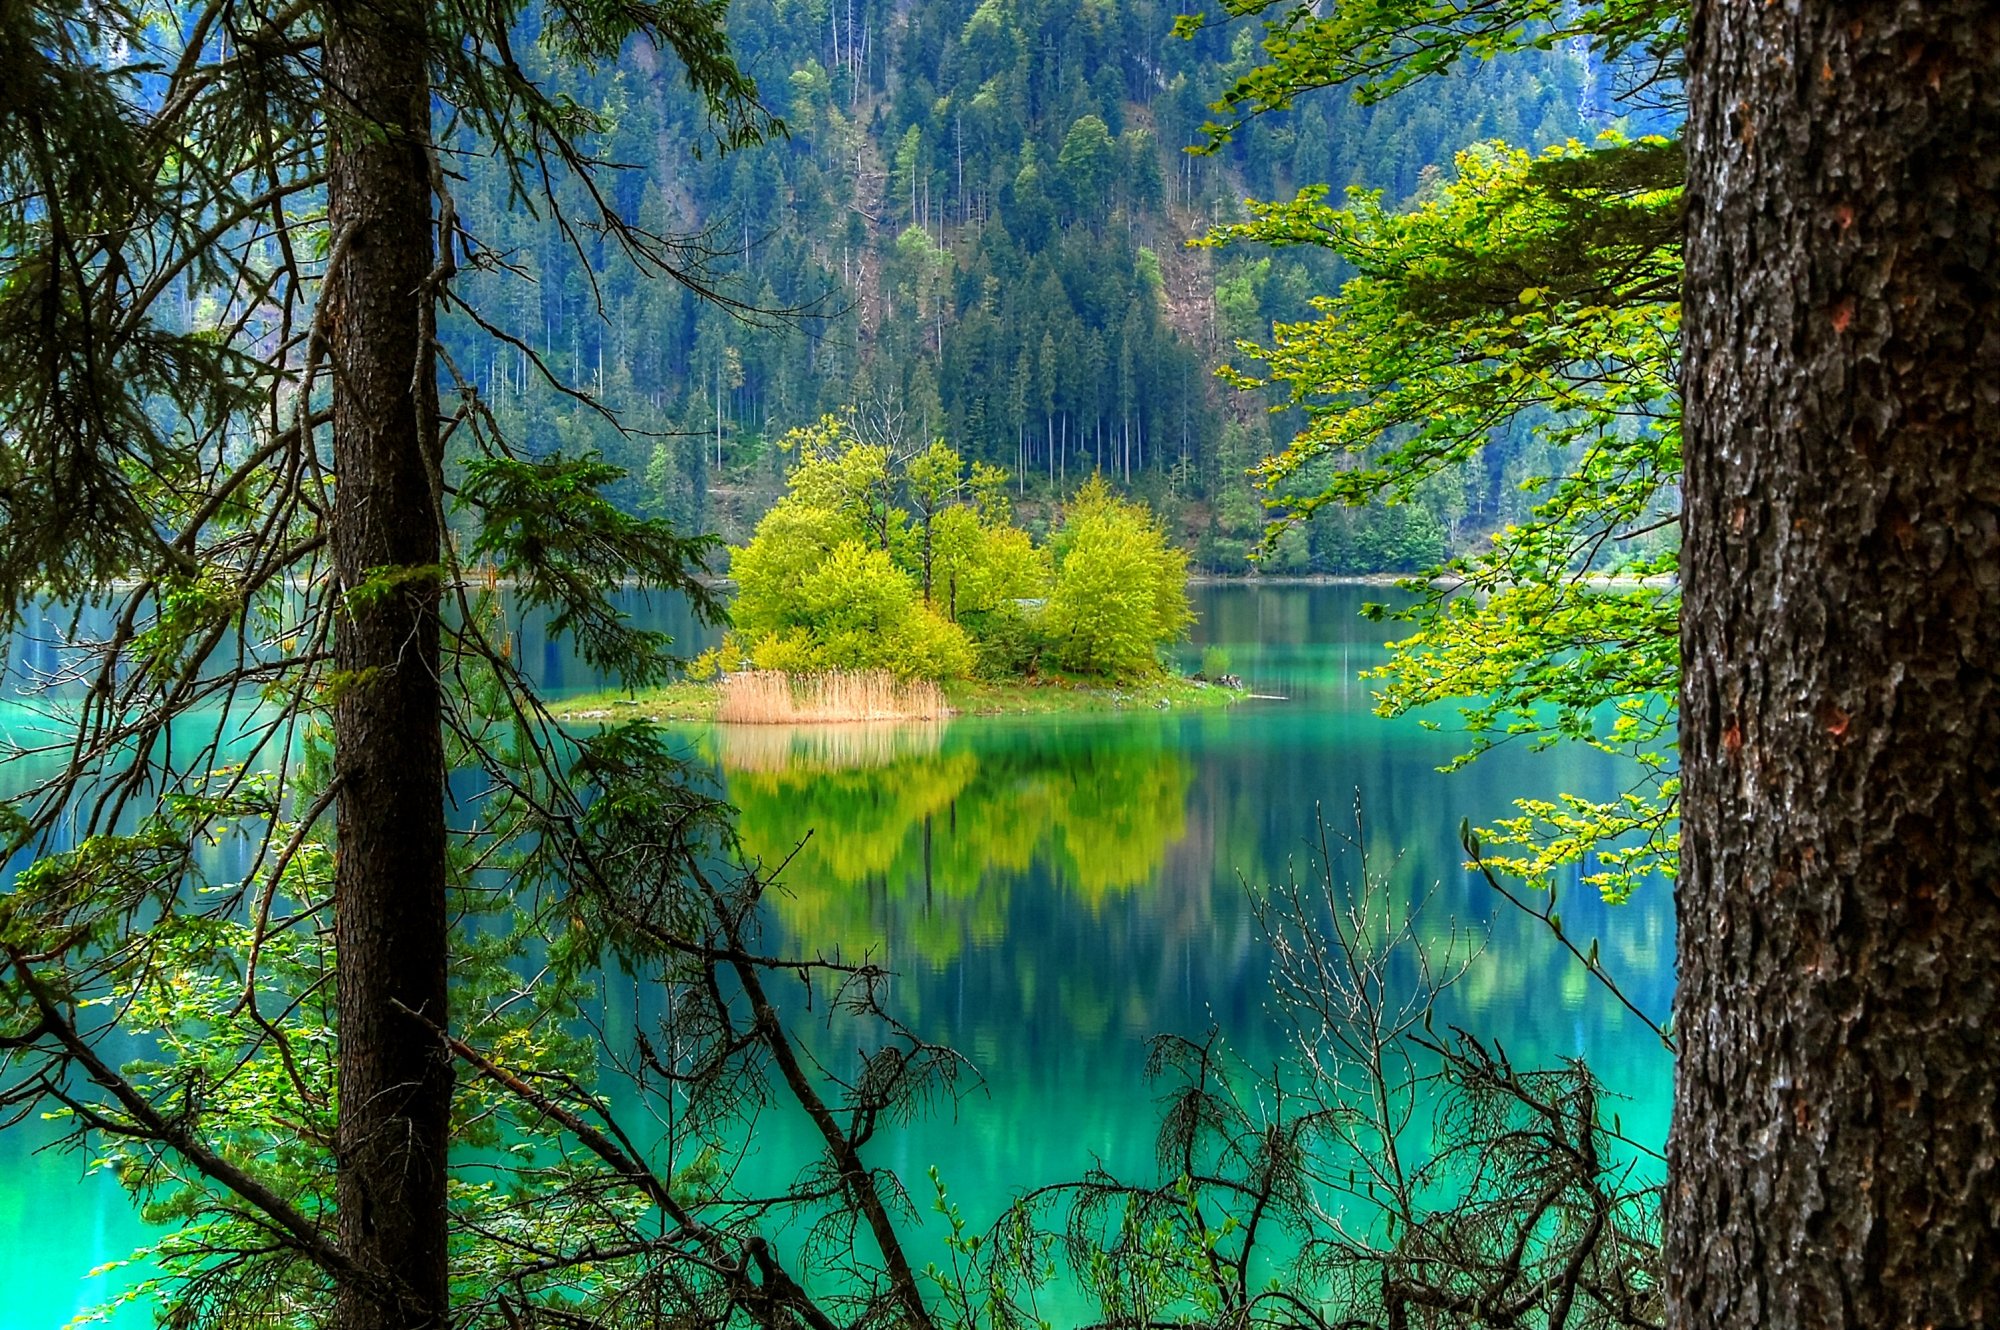 艾布湖,德国阿尔卑斯山最美的湖泊,有人称它为德国九寨沟